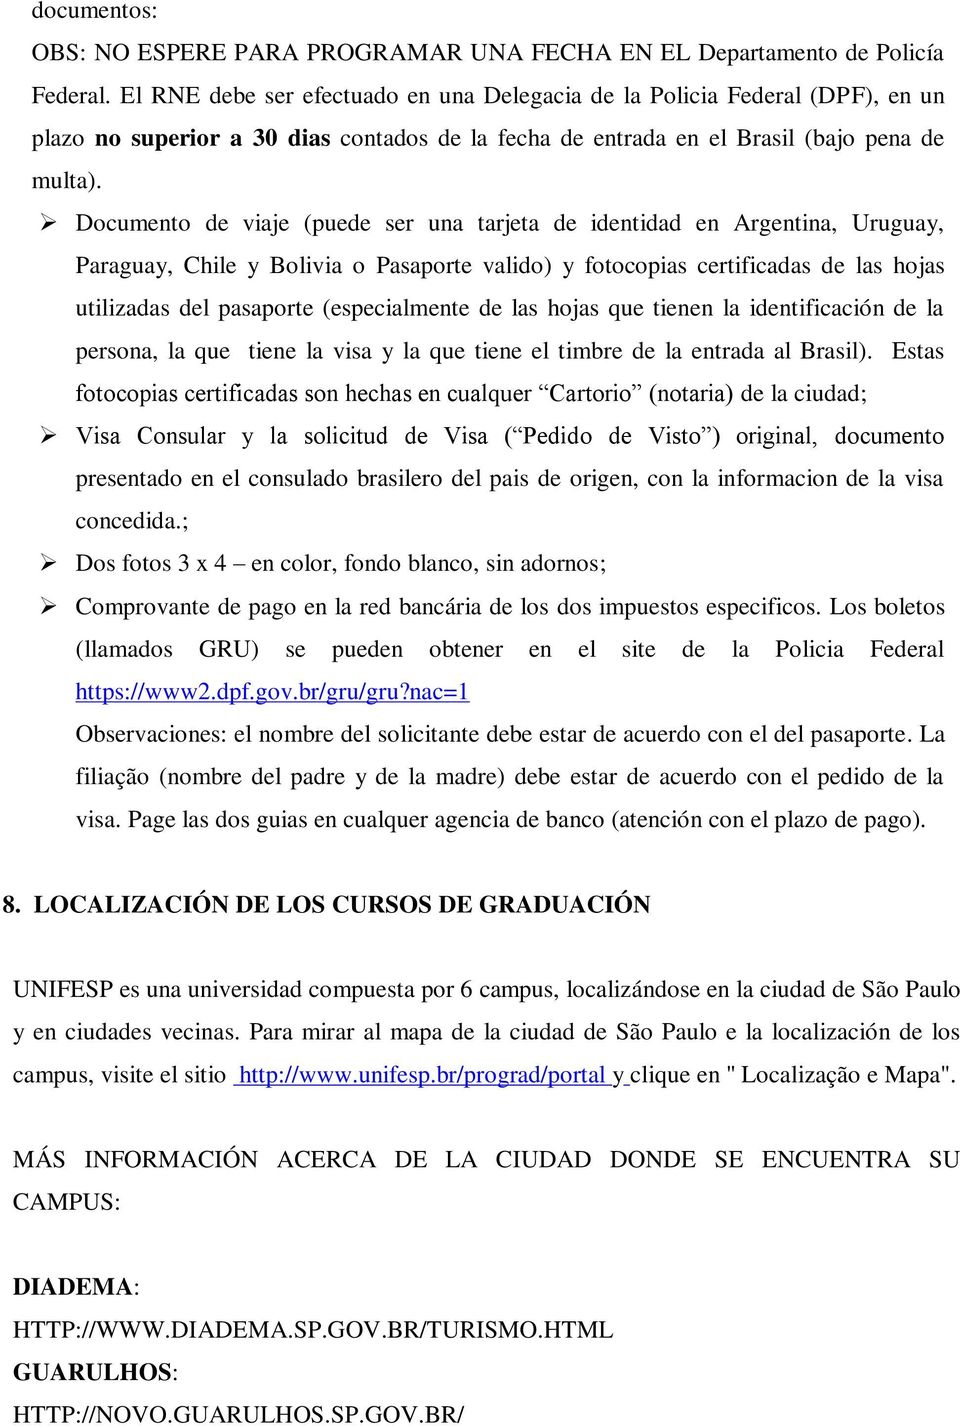 Documento de viaje (puede ser una tarjeta de identidad en Argentina, Uruguay, Paraguay, Chile y Bolivia o Pasaporte valido) y fotocopias certificadas de las hojas utilizadas del pasaporte